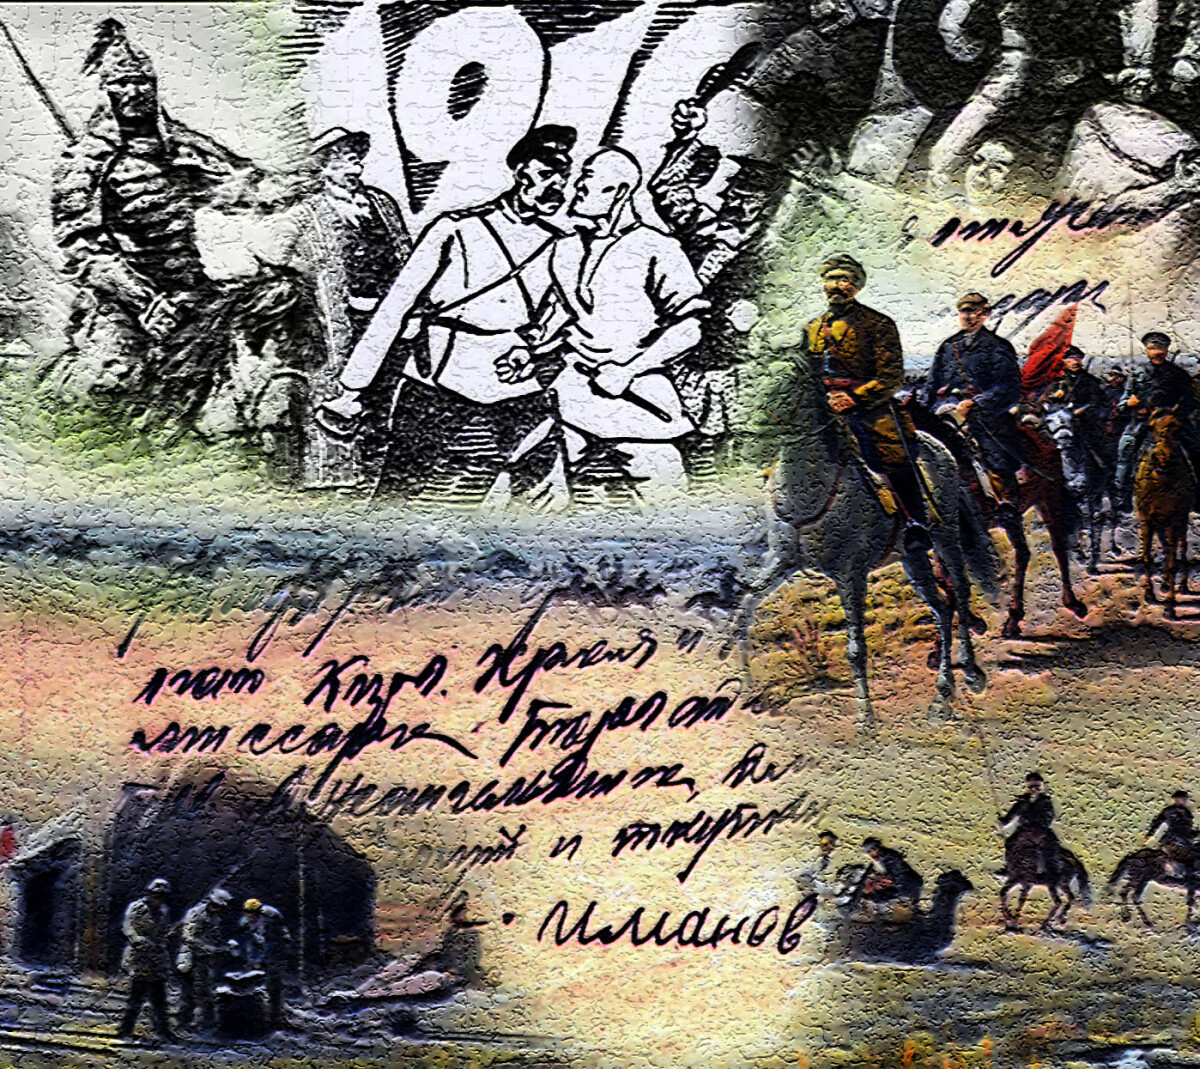 НАЦИОНАЛЬНО- ОСВОБОДИТЕЛЬНОЕ ДВИЖЕНИЕ 1916 ГОДА / Причины поражения - e-history.kz